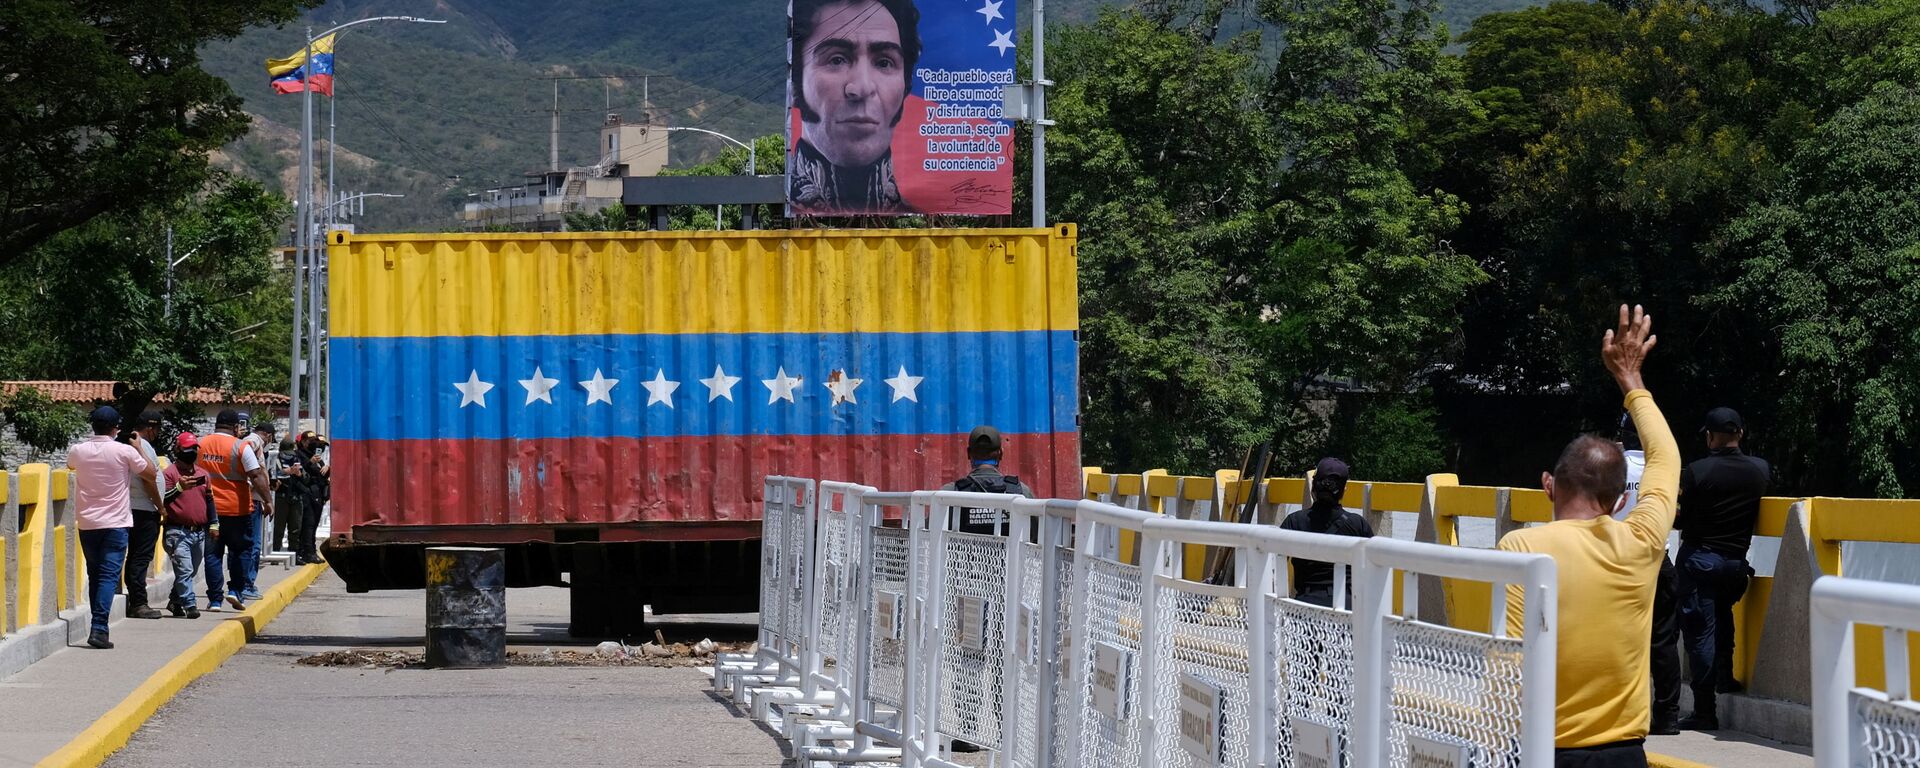 إعادة فتح الحدود بين فنزويلا وكولومبيا، بعد خلاف سياسي بين البلدين في 2019ن 4 أكتوبر 2021 - سبوتنيك عربي, 1920, 17.10.2021